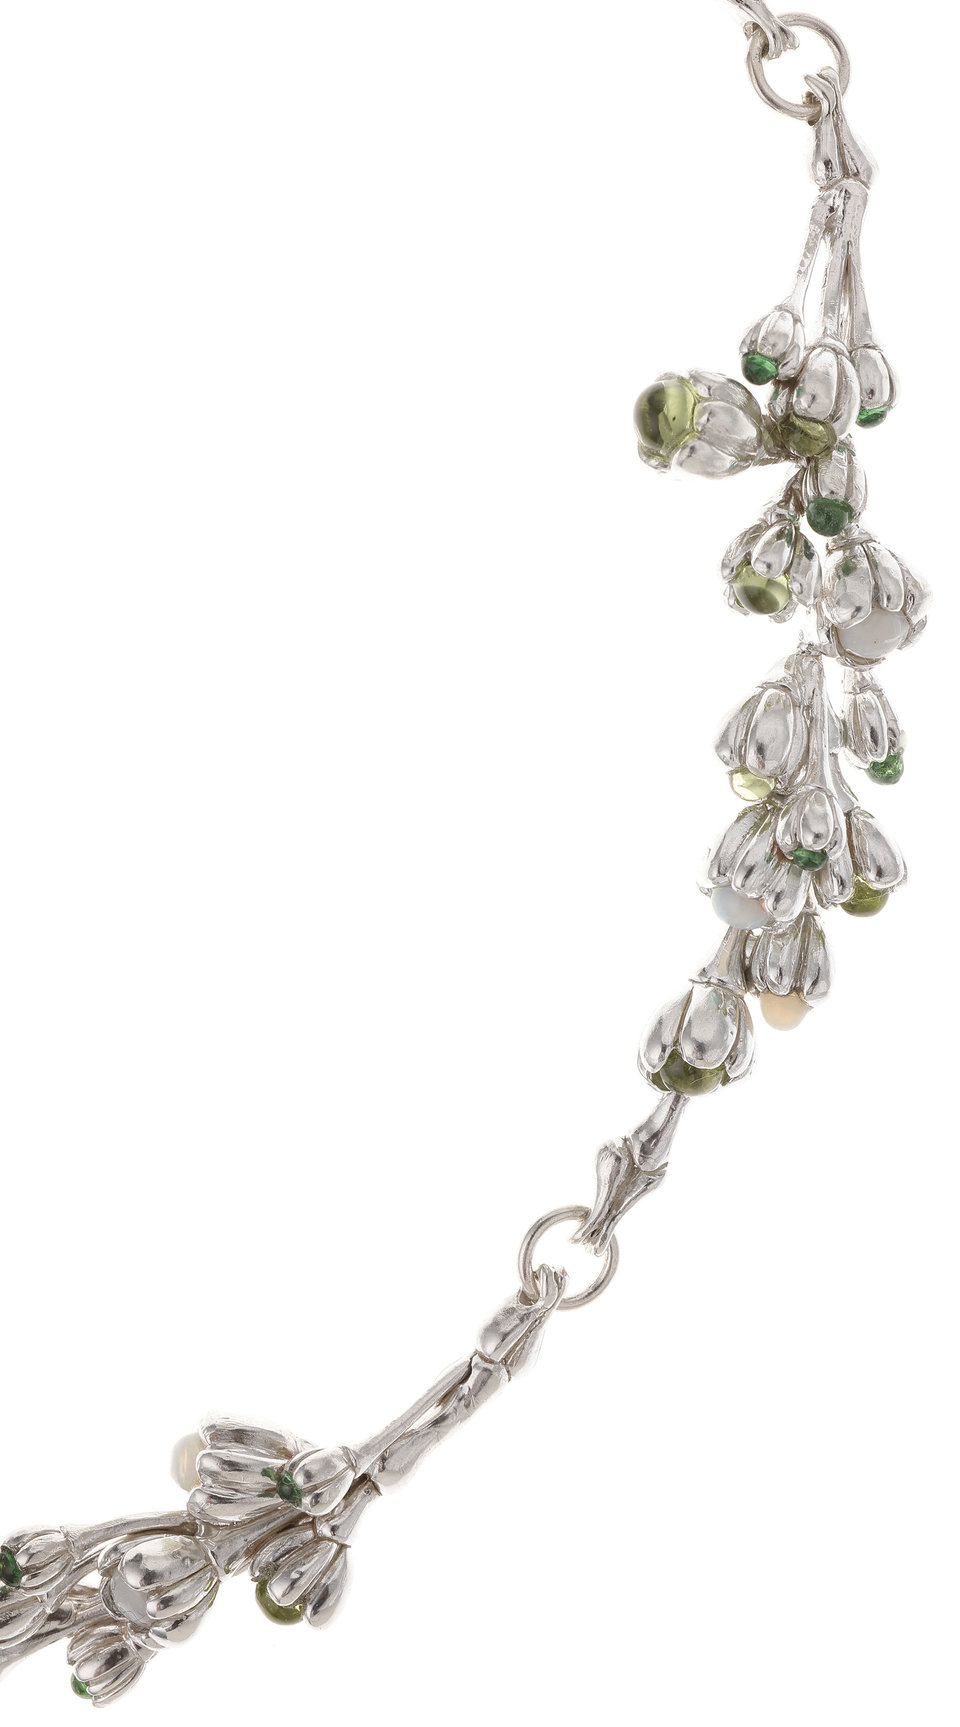 Large Wreath Necklace - unique piece